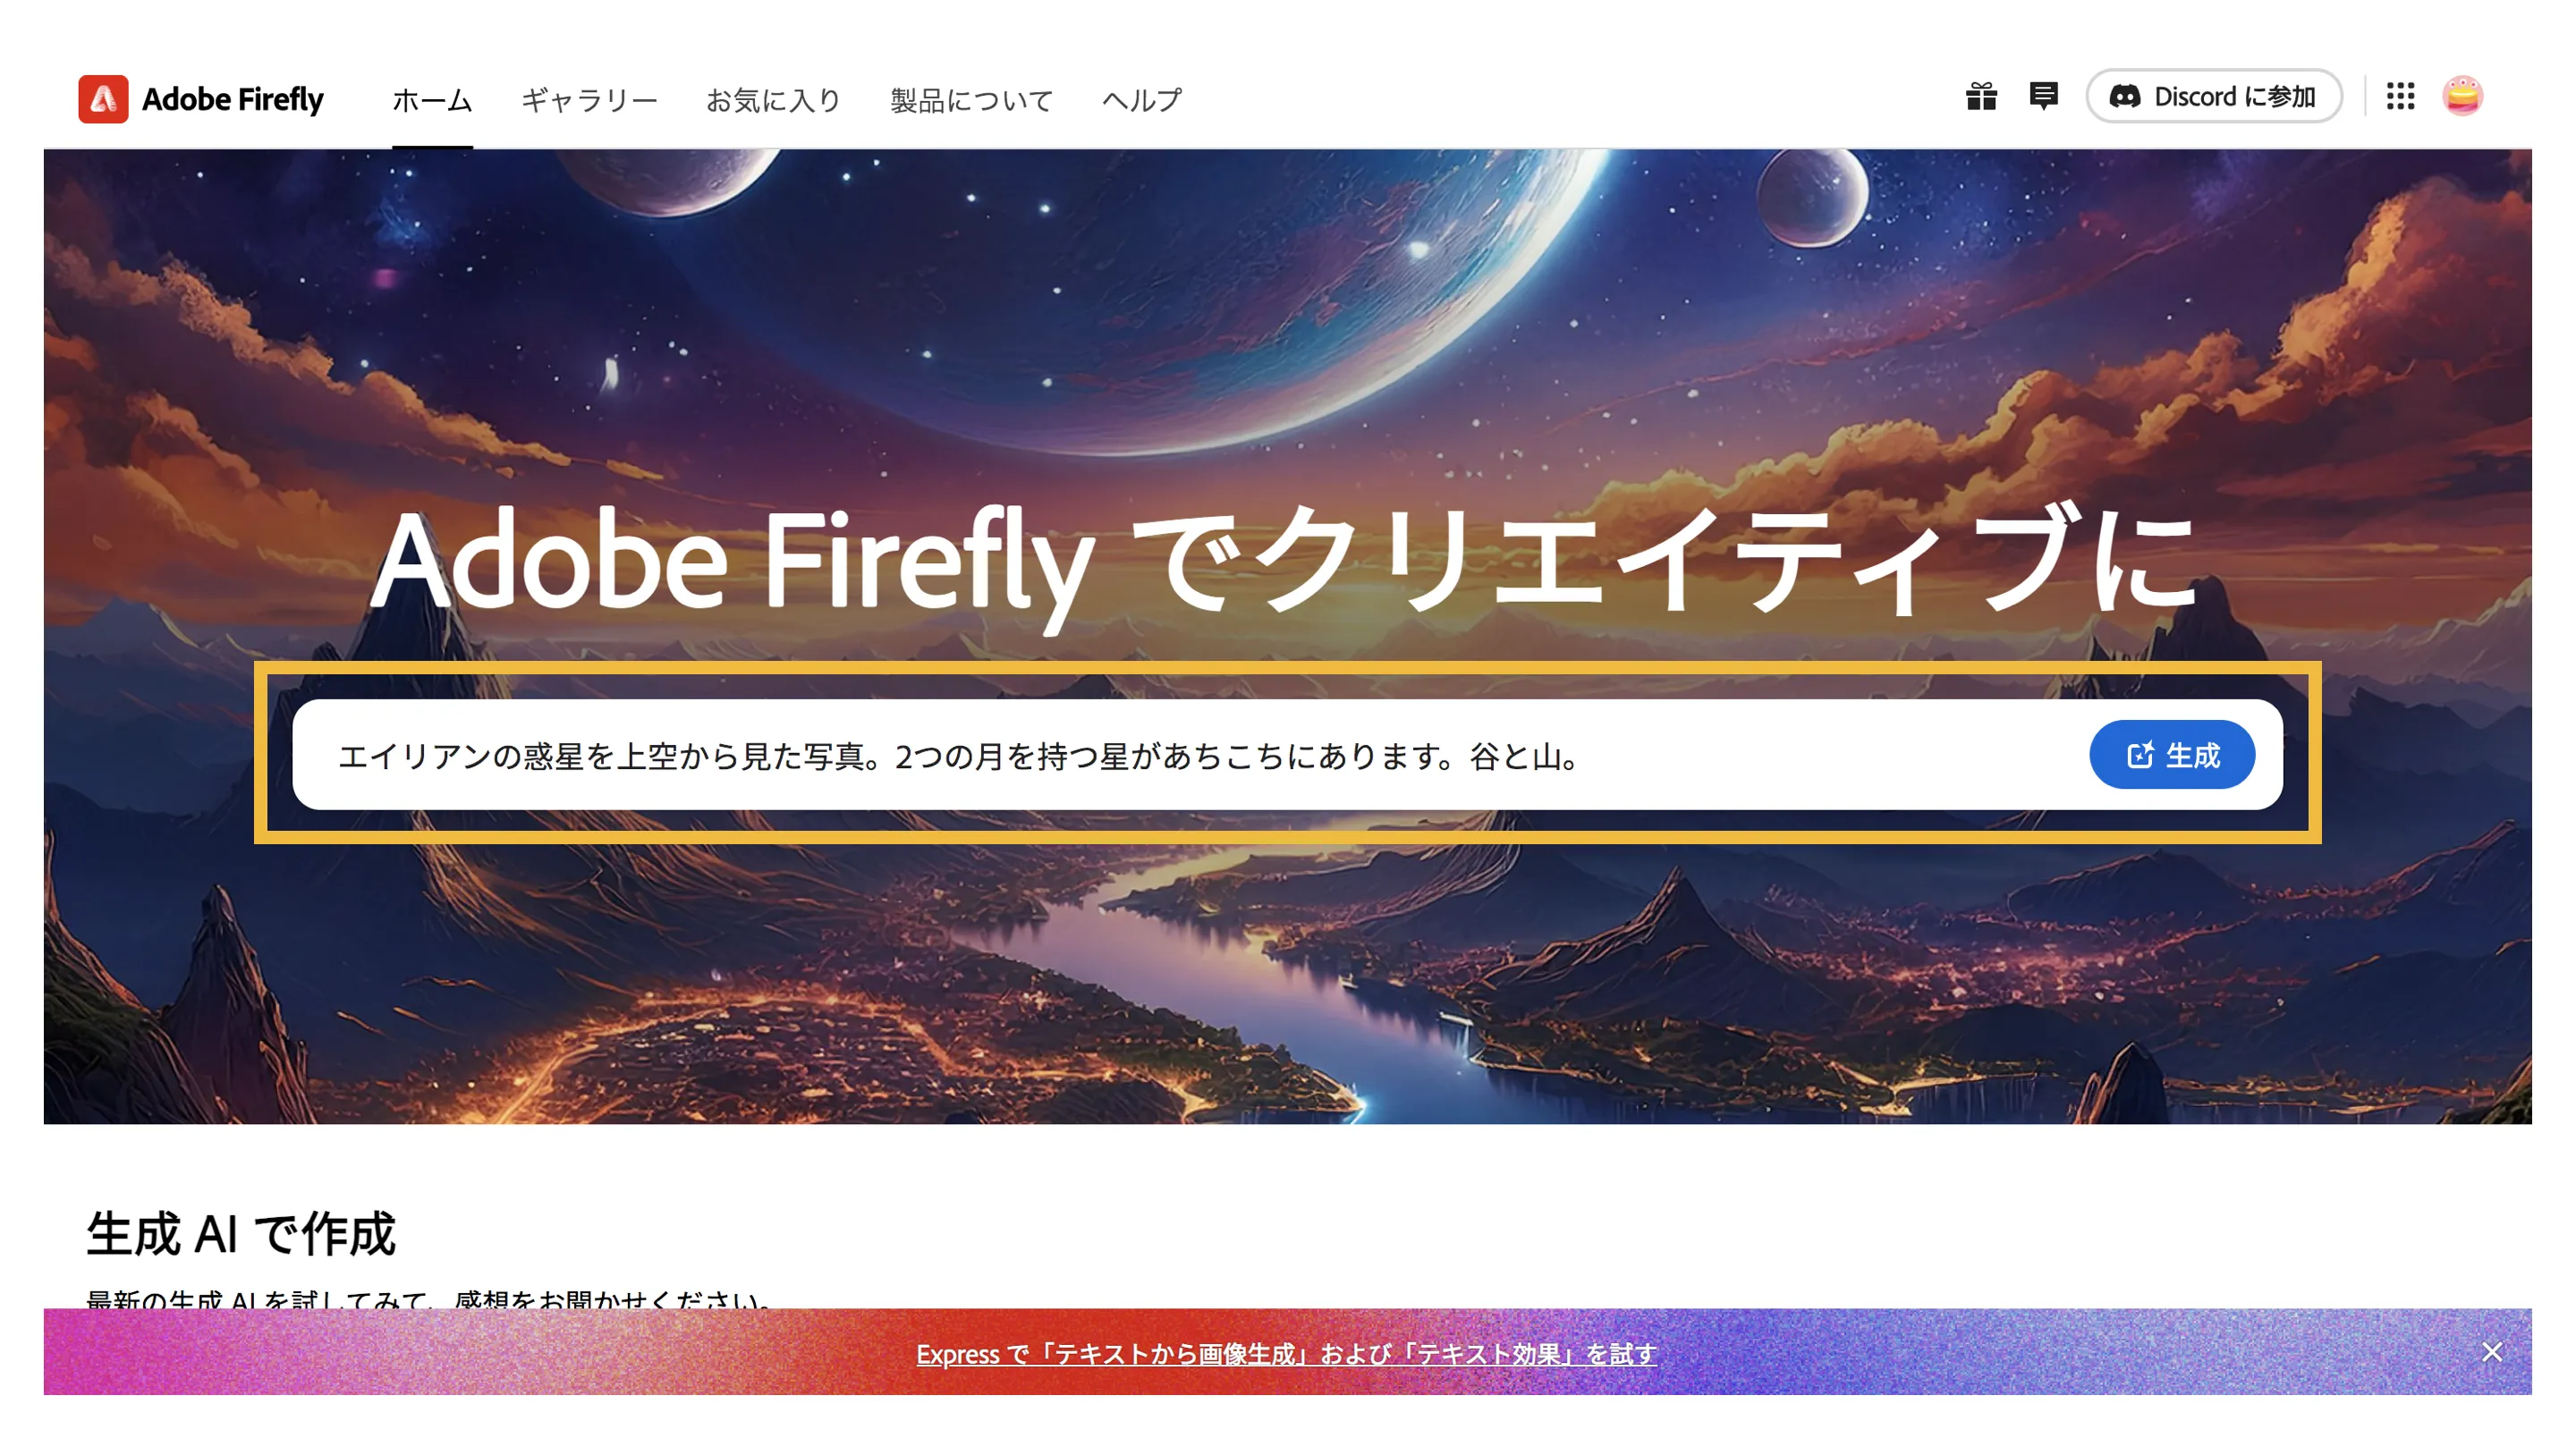 Adobe Firefly2